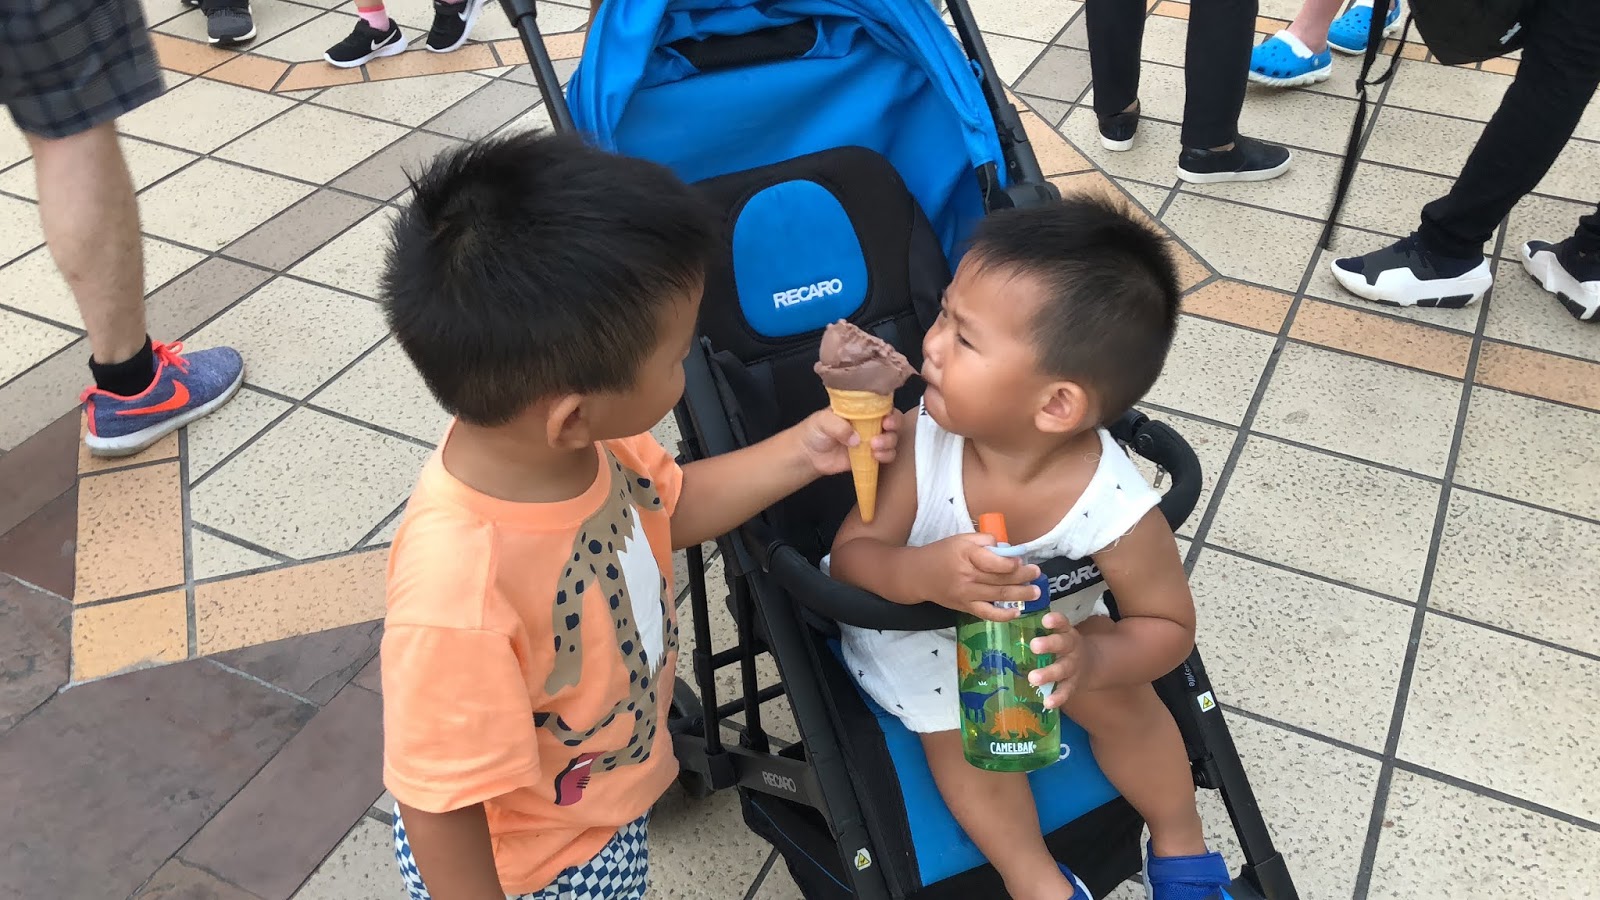 圖為筆者的兩個小孩，2018年7月29日於六福村所攝，小孩是社會的希望，希望每一個小孩都能平安、快樂的長大